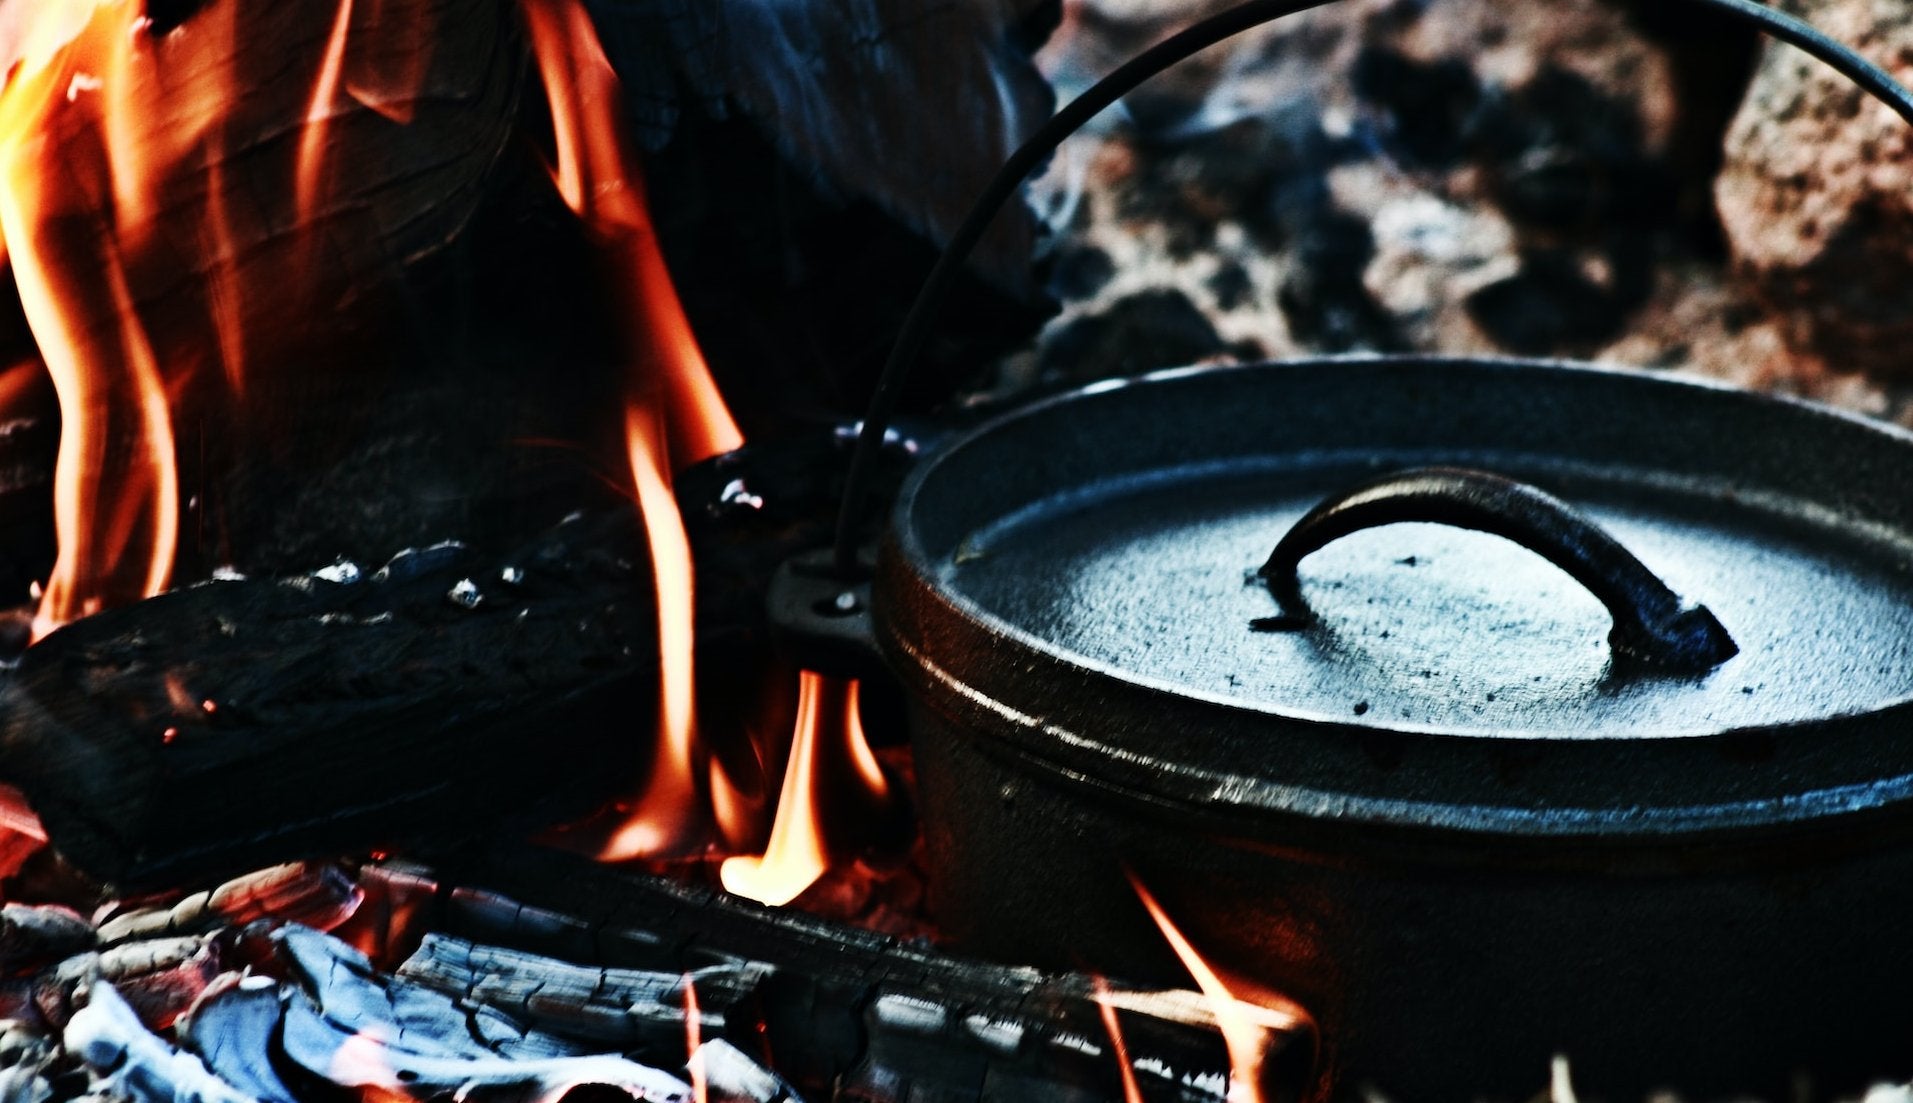 Les astuces pour cuisiner avec un réchaud ou un feu de camp